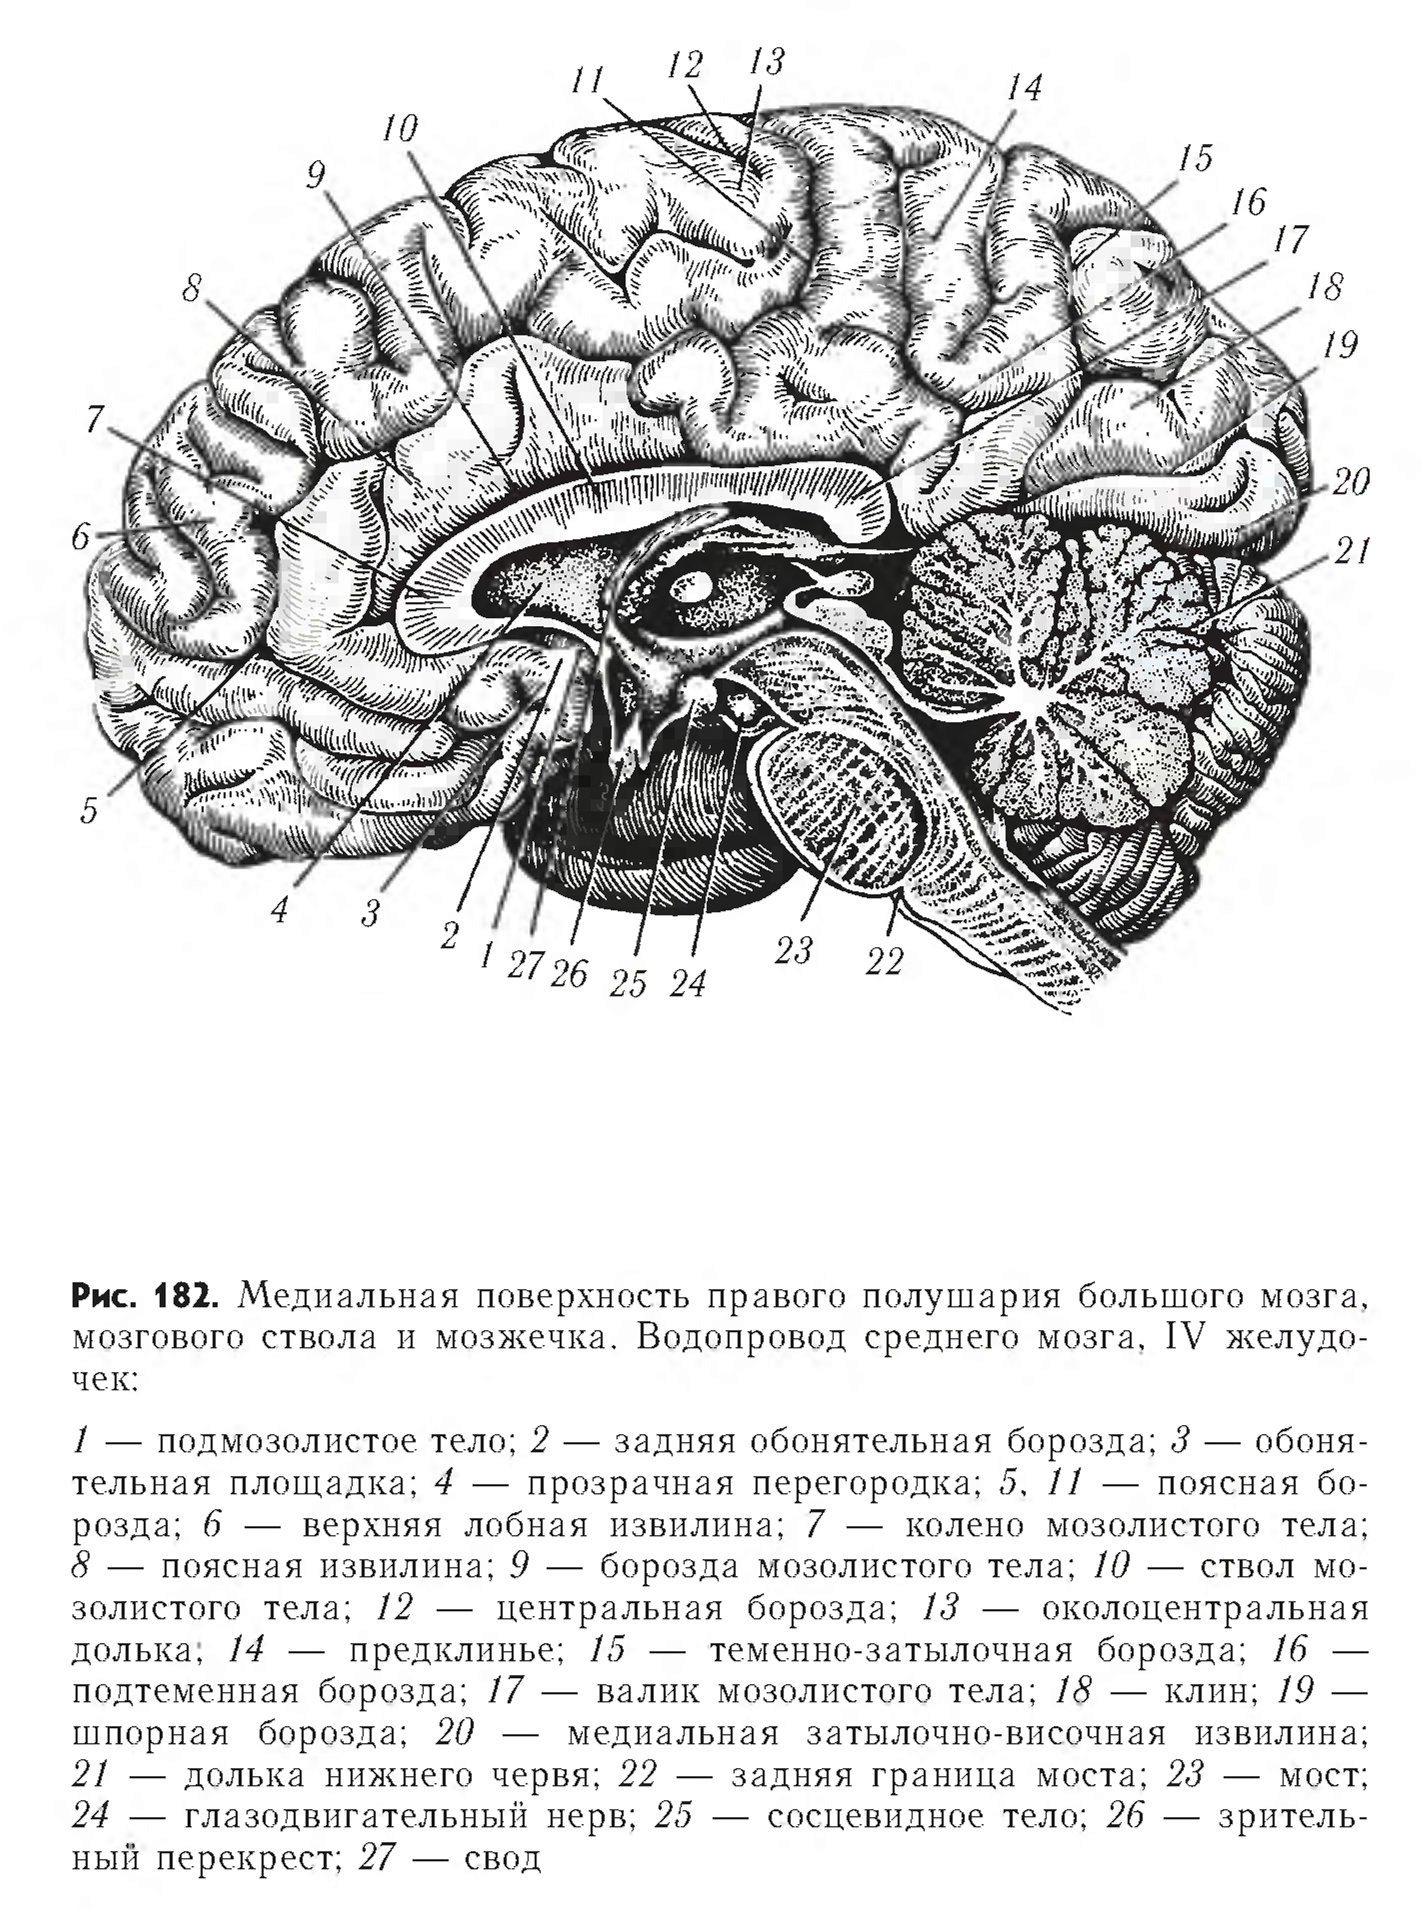 Медиальная поверхность мозга. Медиальная поверхность головного мозга анатомия. Медиальная поверхность головного мозга рисунок. Медиальный разрез головного мозга.